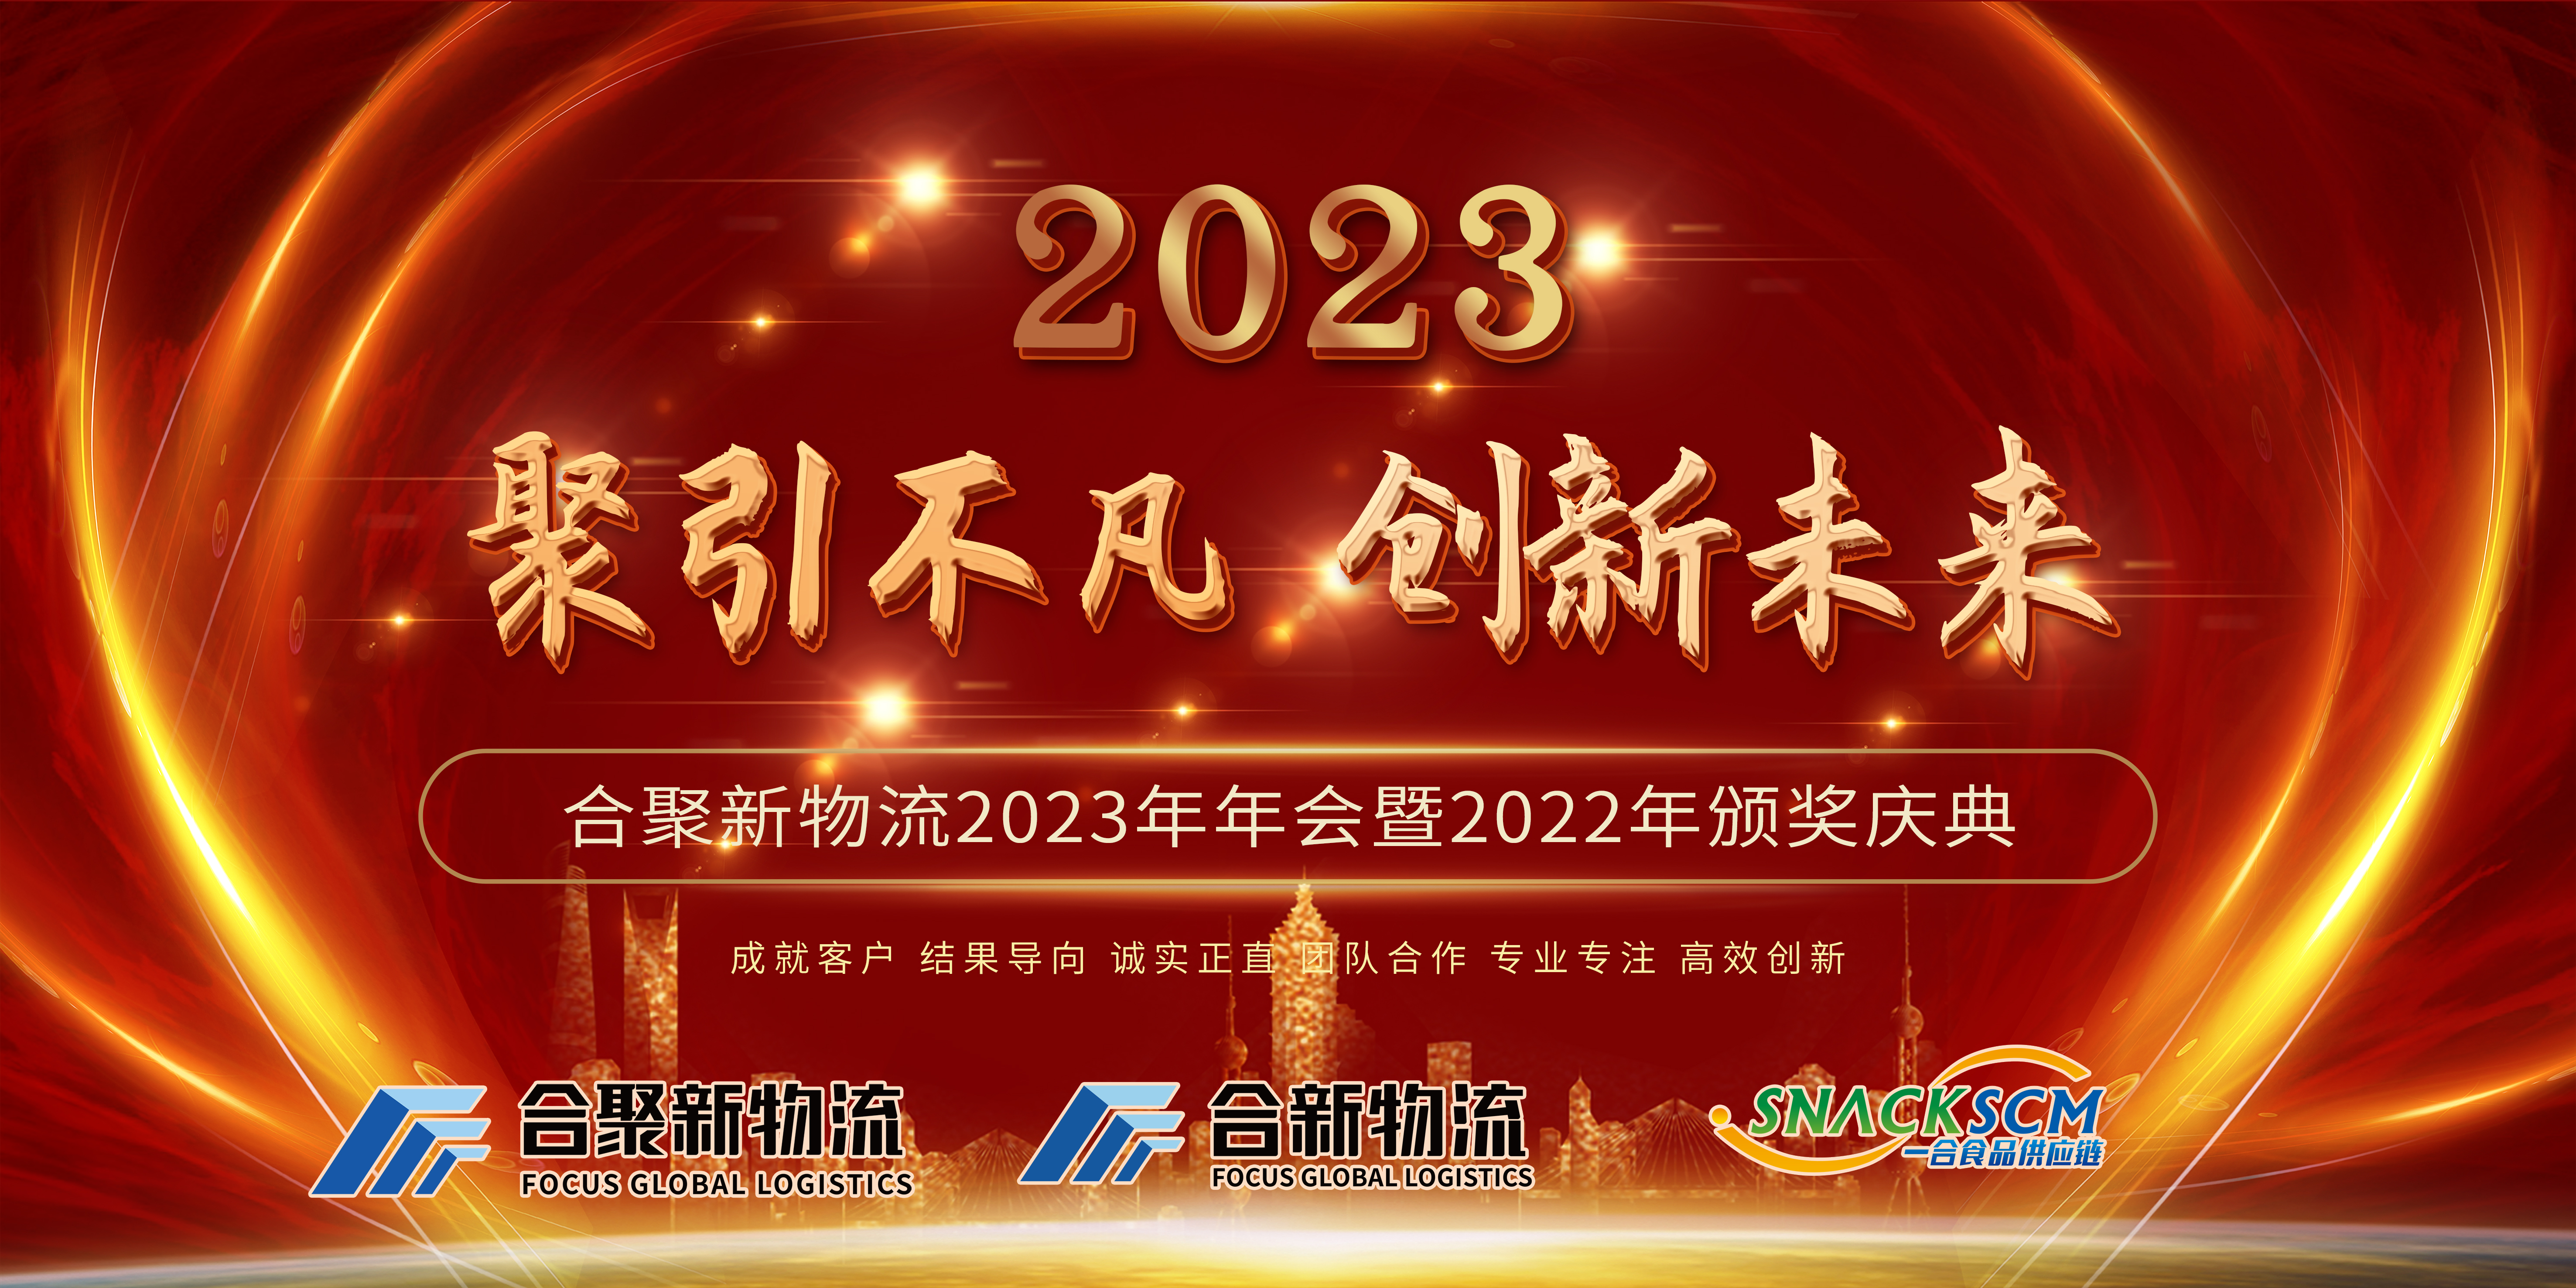 Letno srečanje Focus Global Logistics 2023 in podelitev nagrad 2022 sta se uspešno zaključila!